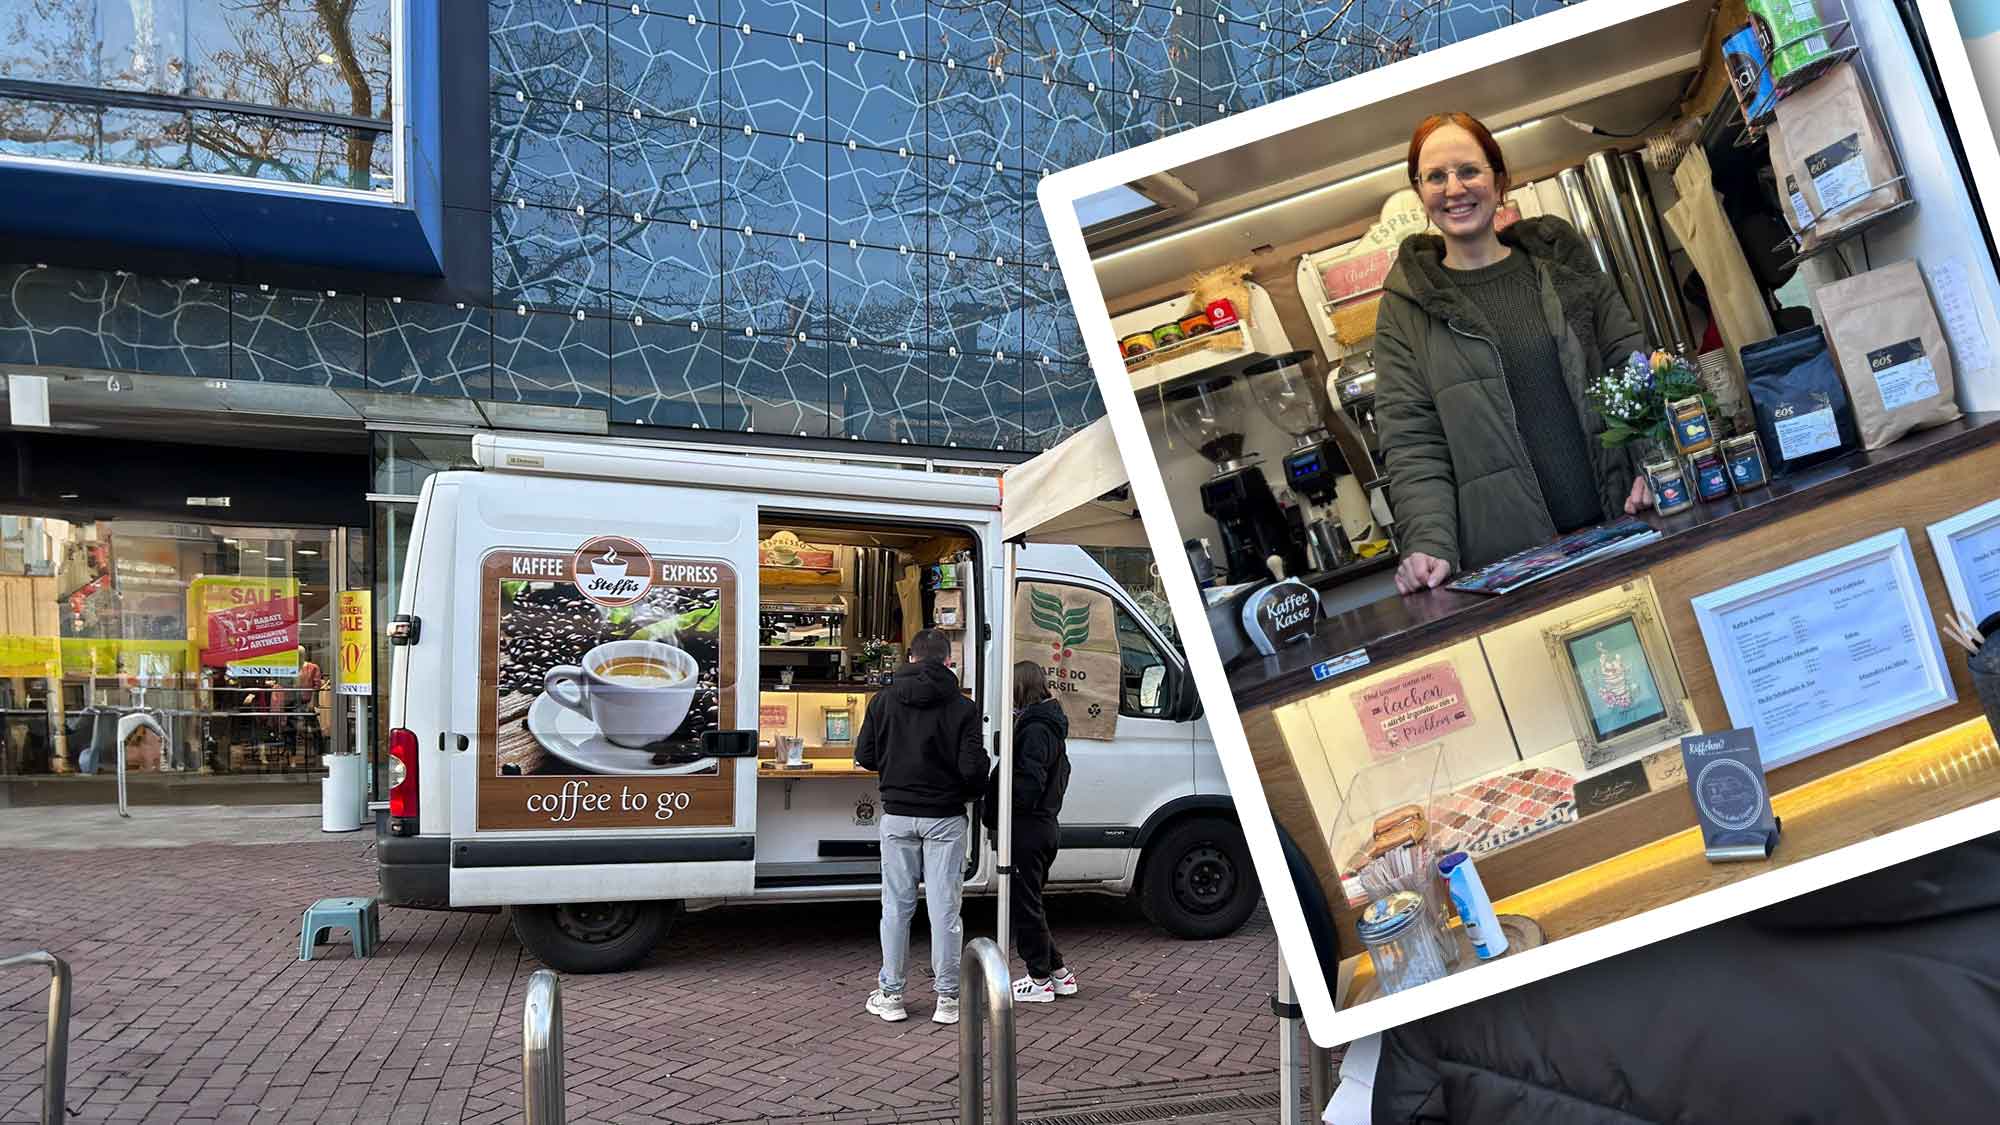 Gütersloh, »C City« (Coffee City) dank Steffis Kaffee Express, der Mobilen Barista für OWL, Espresso, Chai, Schokolade